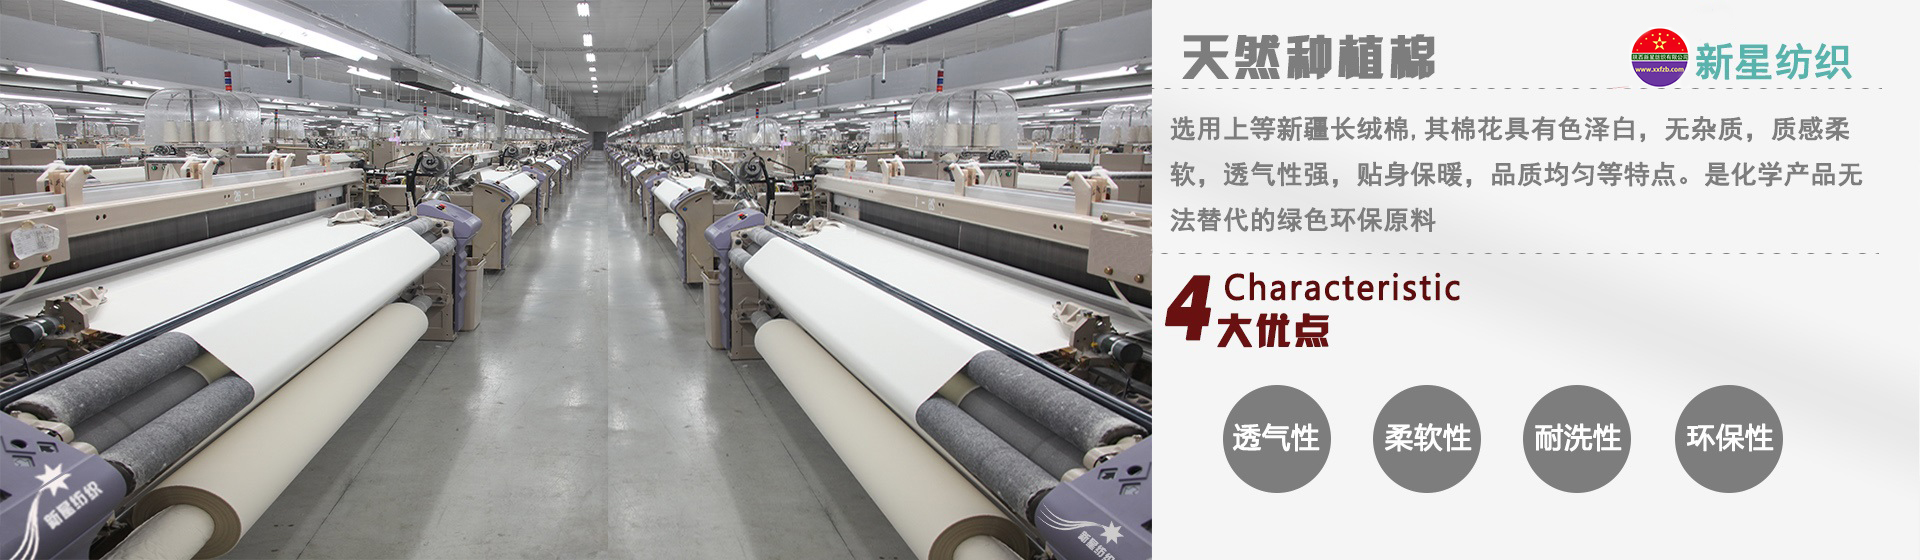 凯时k66纺织为您介绍涤棉坯布的特点